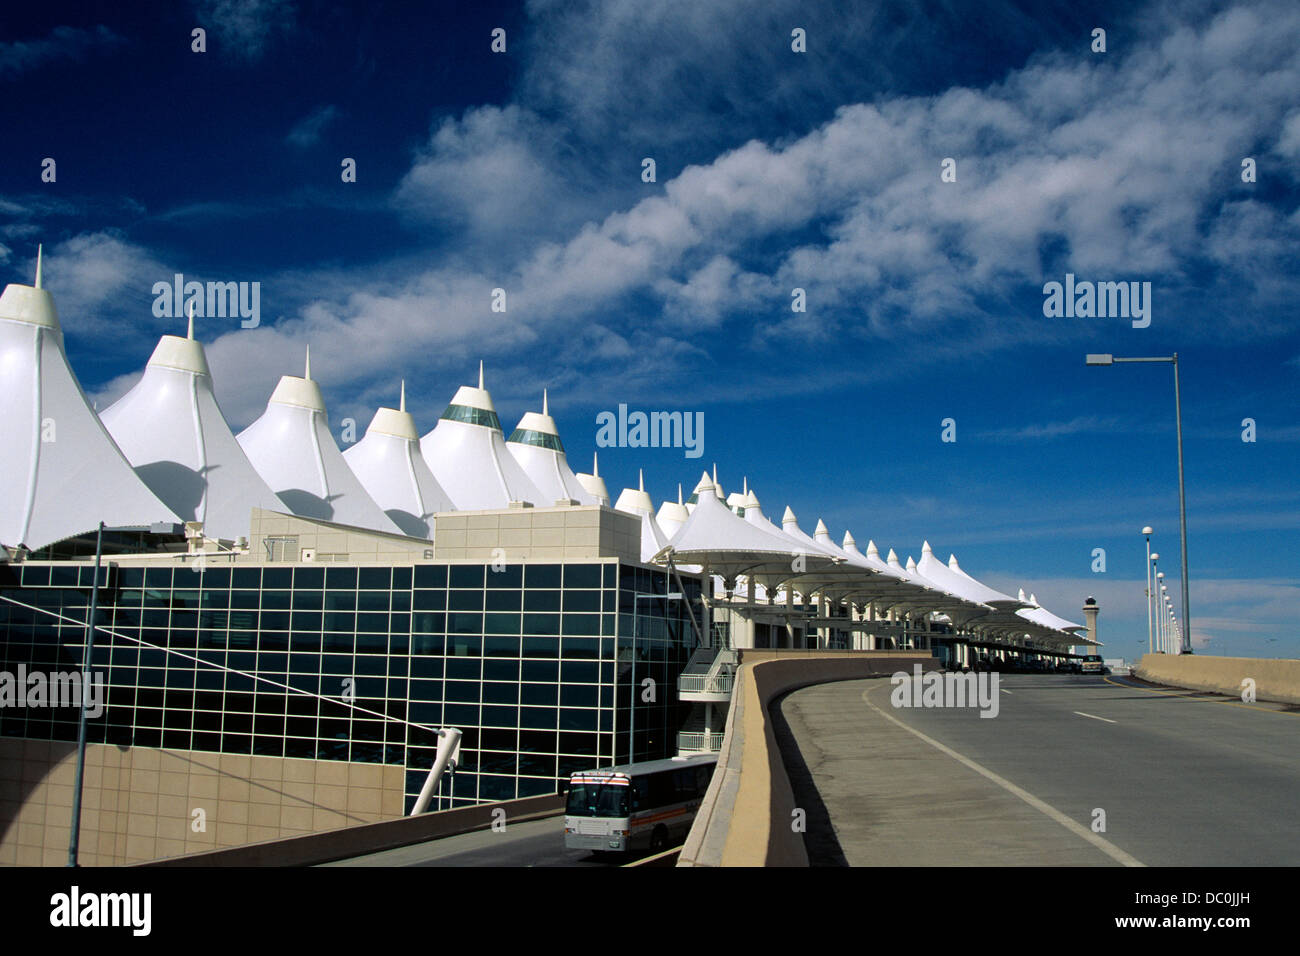 DENVER INTERNATIONAL AIRPORT COLORADO Stock Photo